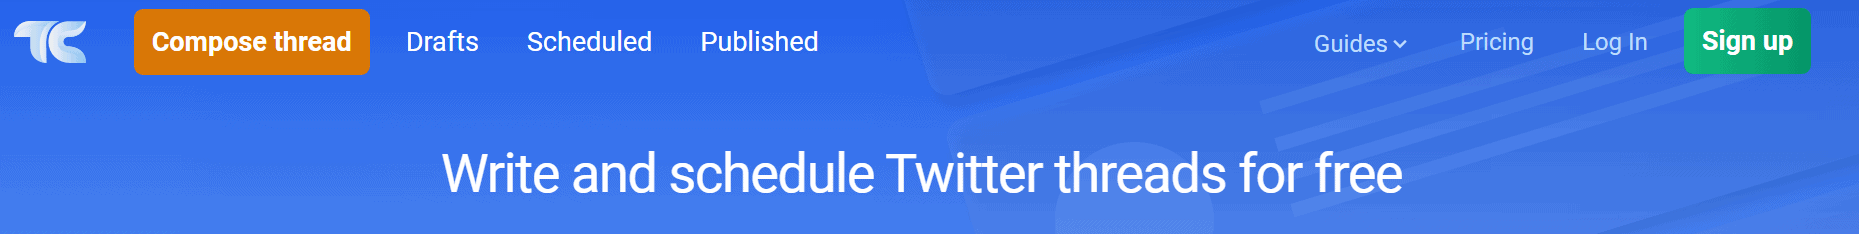 Twitter Threads Scheduling Software - Thread Creator